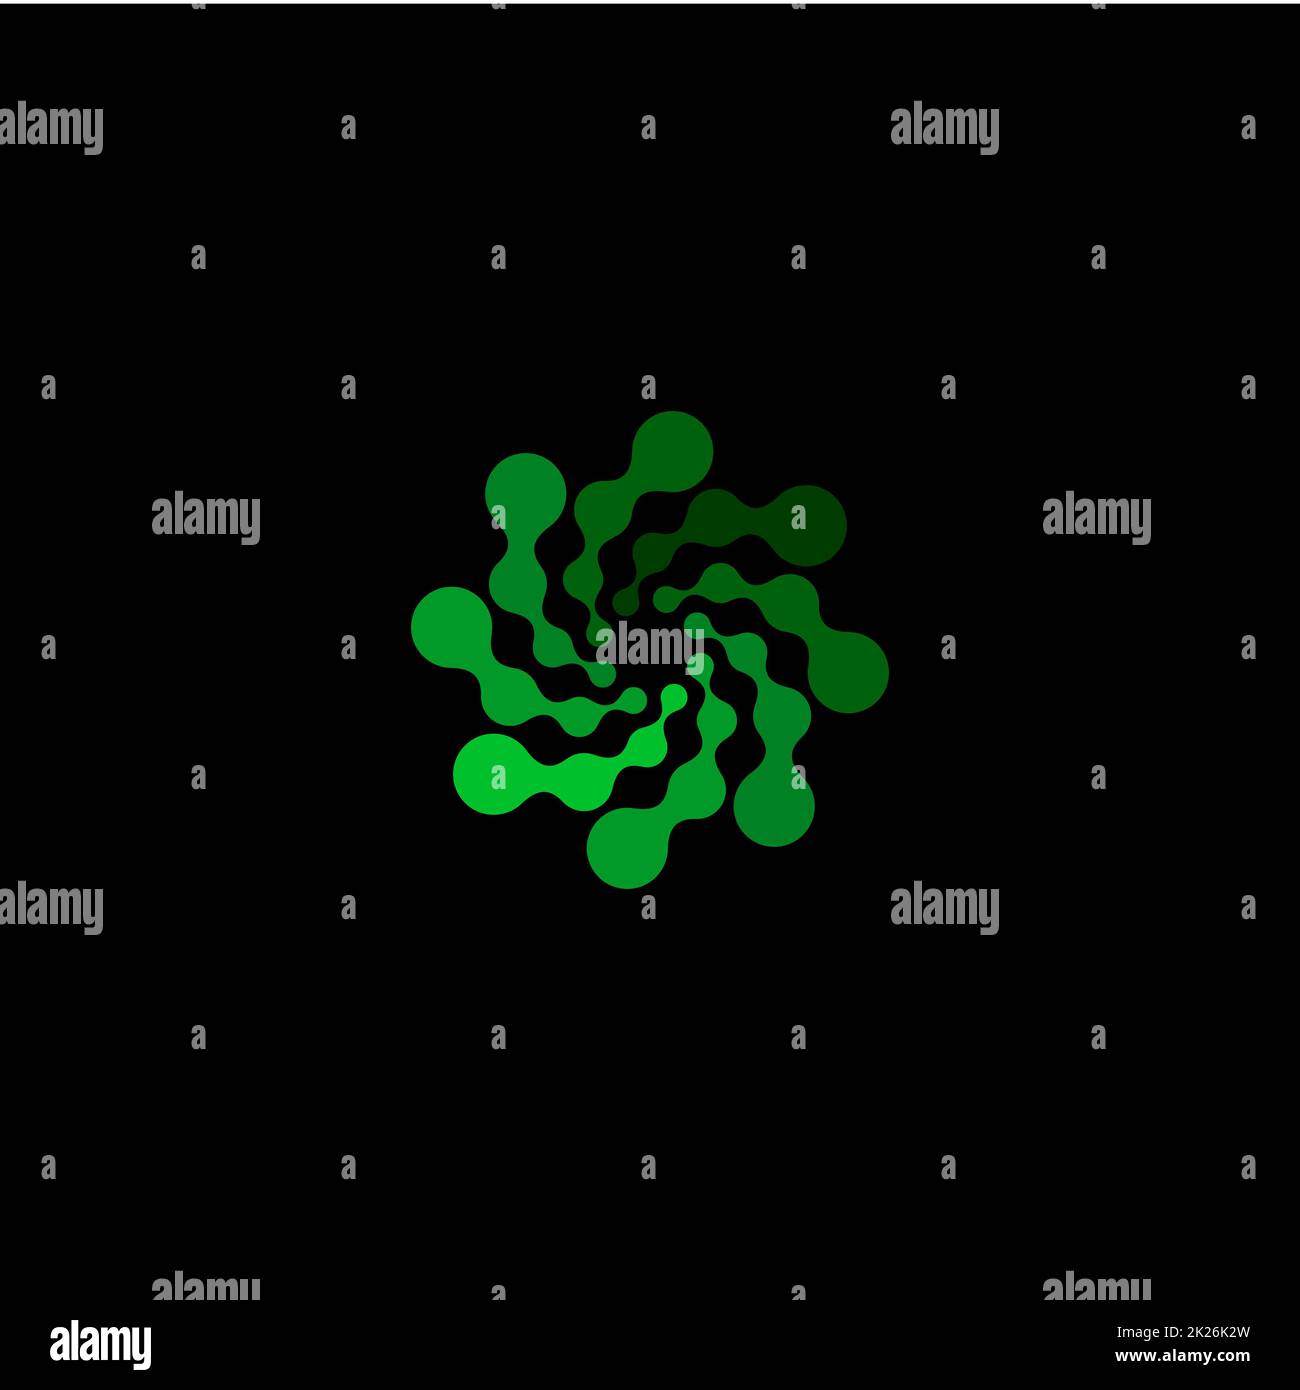 Isoliertes abstraktes grünes, rundes Logo auf schwarzem Hintergrund, einfaches, flach gepunktetes, wirbeliges Logo, Blumenvektordarstellung Stockfoto